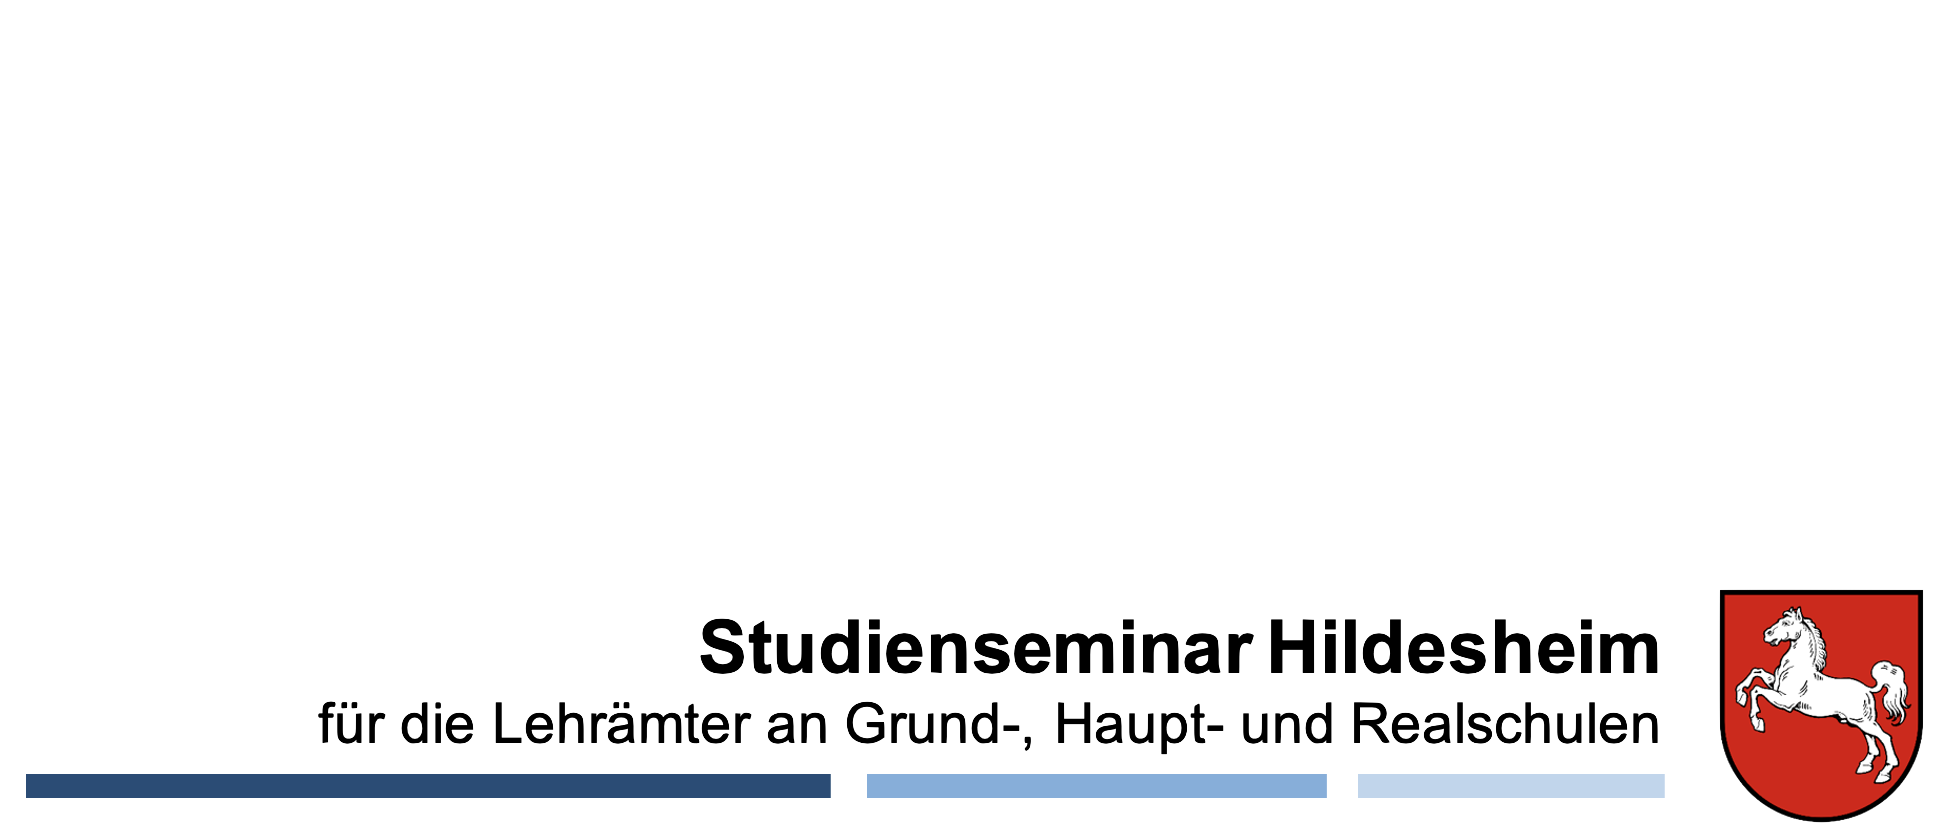 Studienseminar Hildesheim für die Lehrämter an Grund-, Haupt- und Realschulen